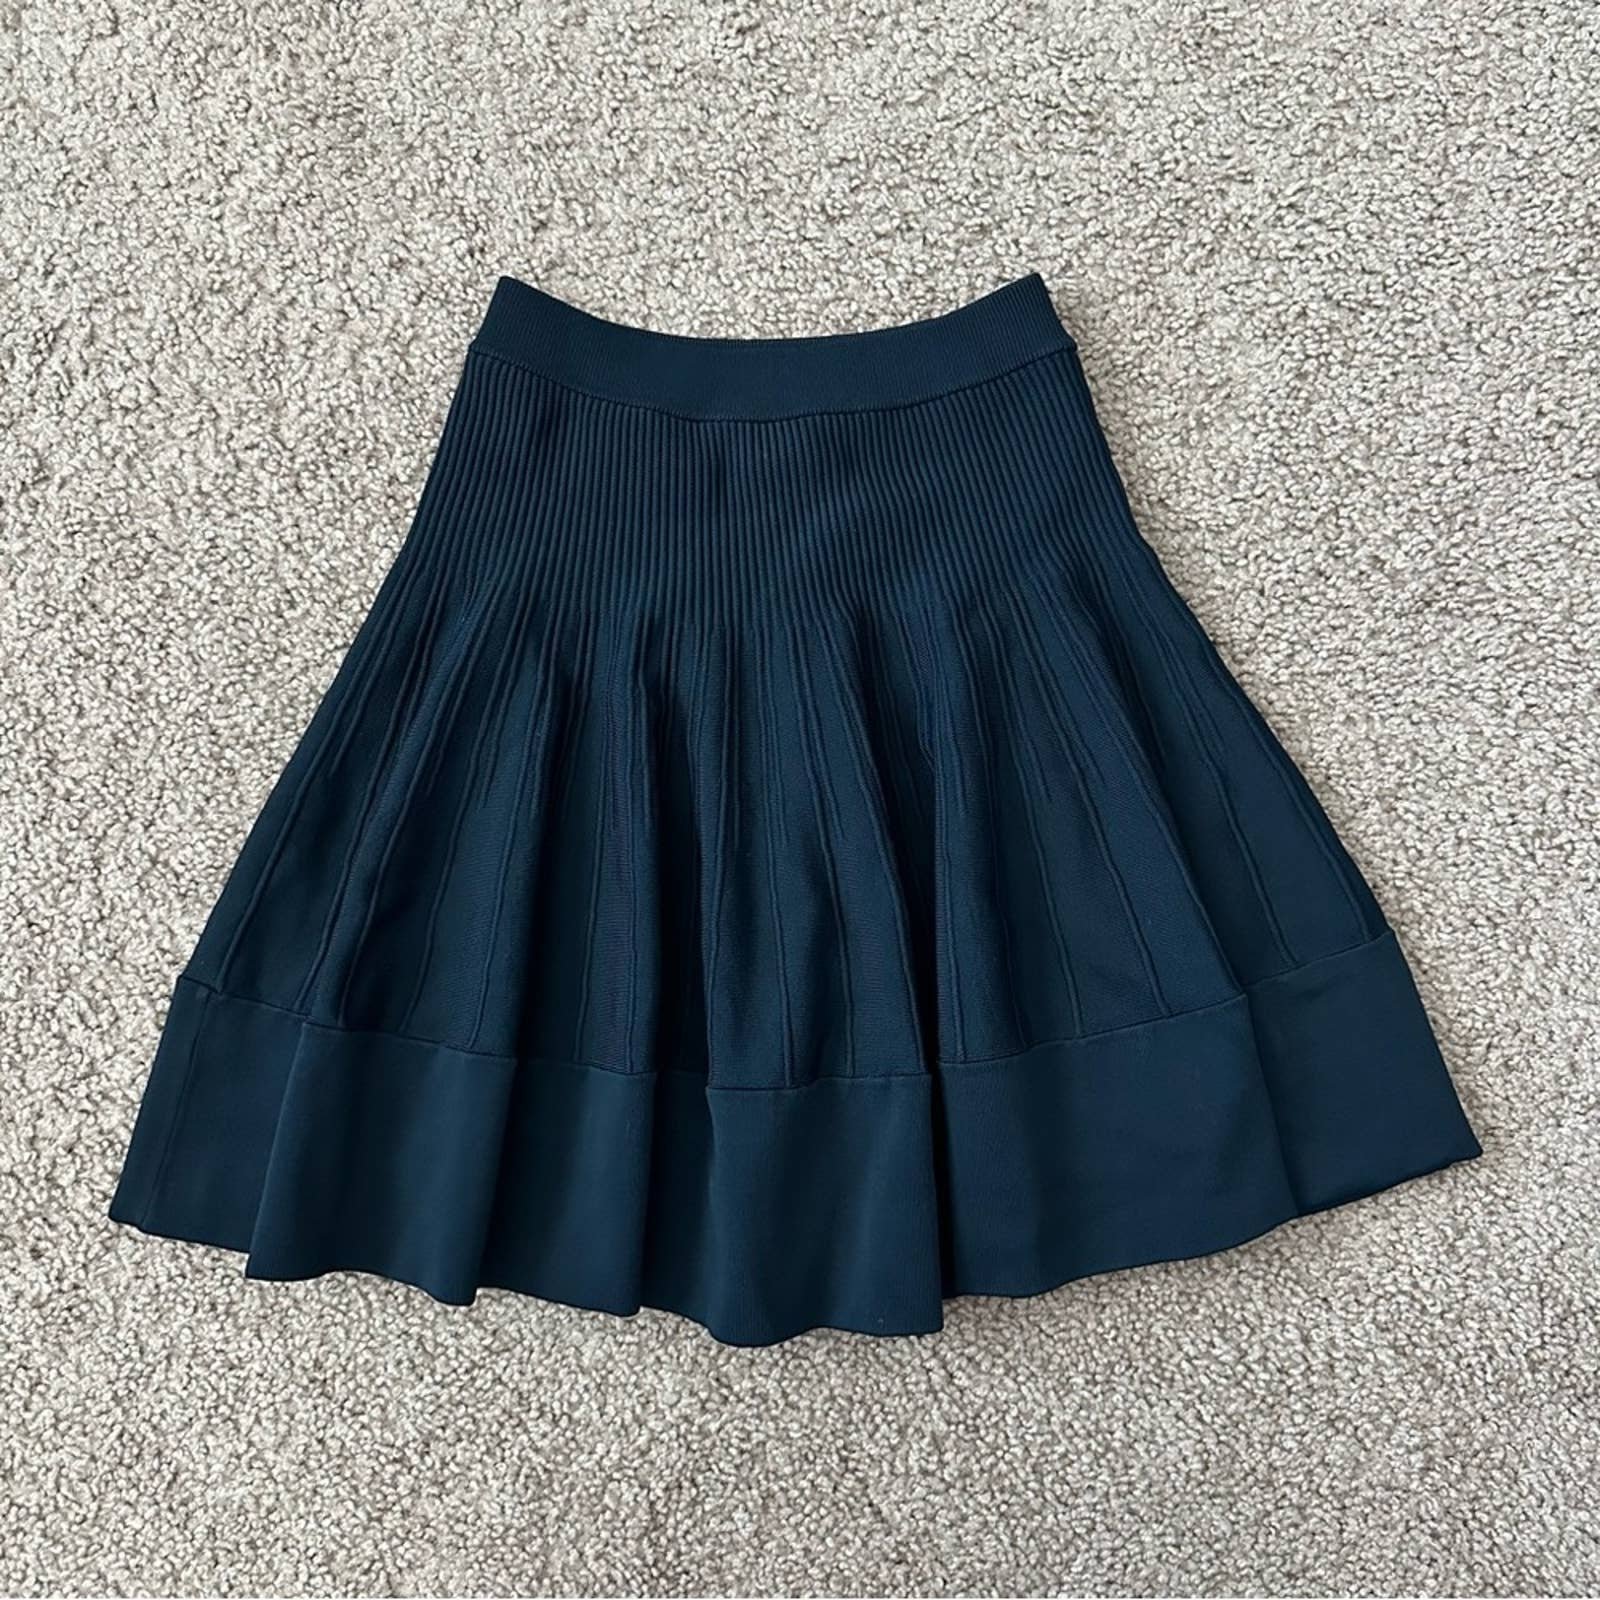 Cheap A.L.C. Skirt Womens Size XS Rayon Knit Mini Dark Navy Blue NX0I3q0iT Online Shop